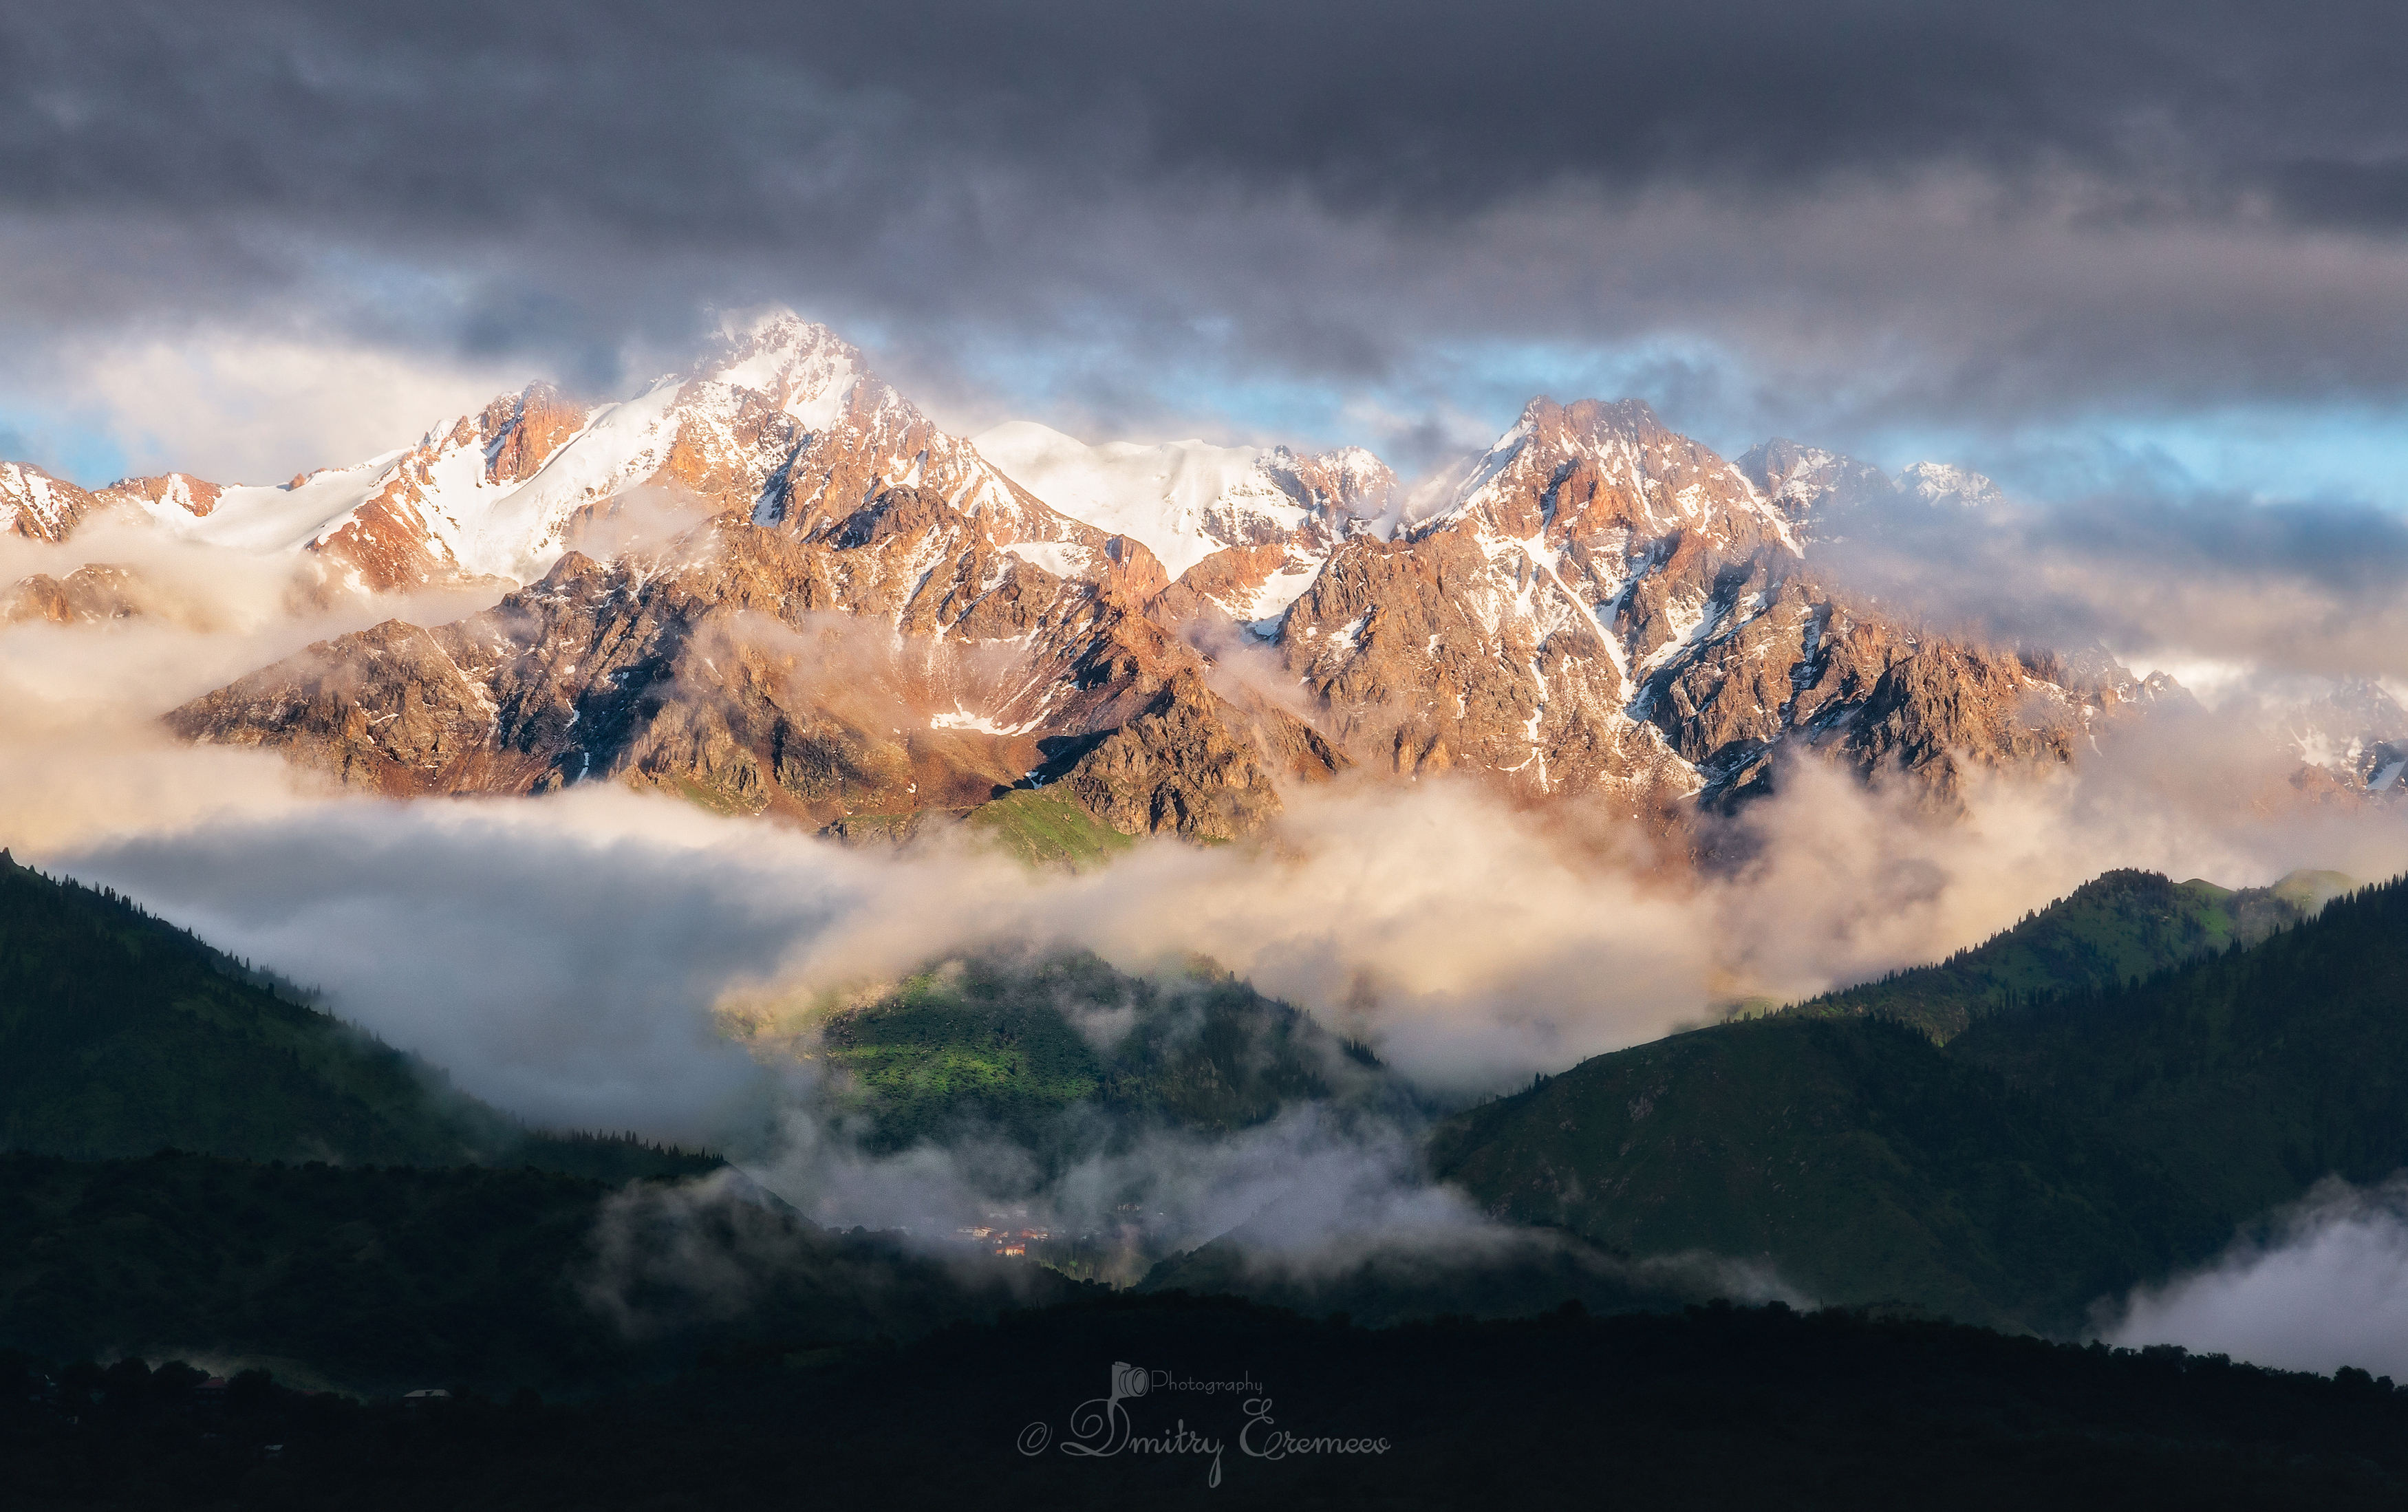 горы пейзаж природа лето небо свет цвет снег облака фотография, Еремеев Дмитрий